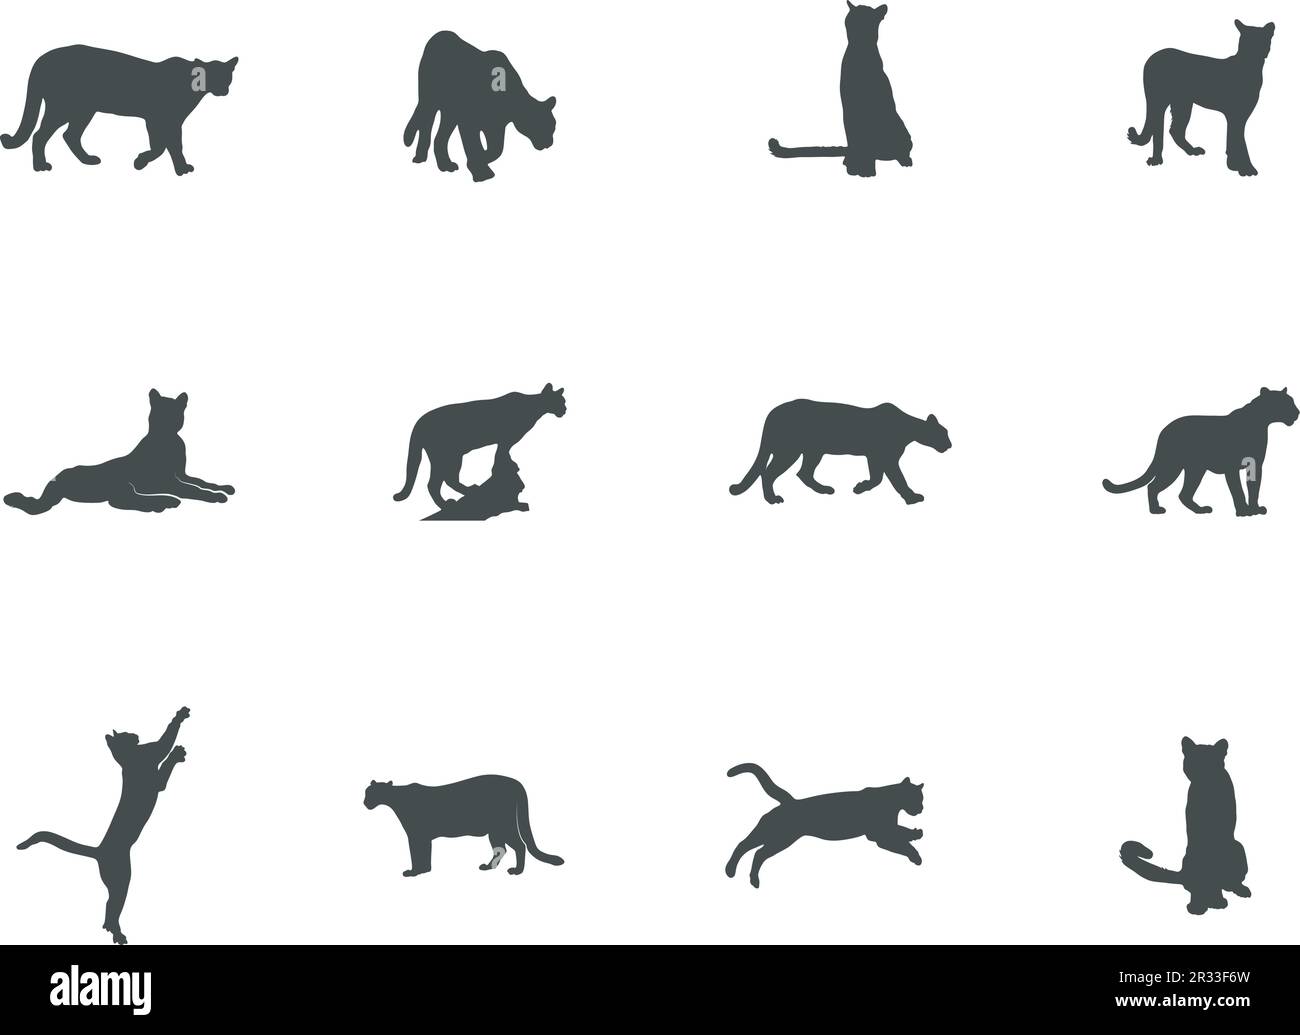 Puma silhouette, Puma vector,  Puma silhouette vector illustration Stock Vector